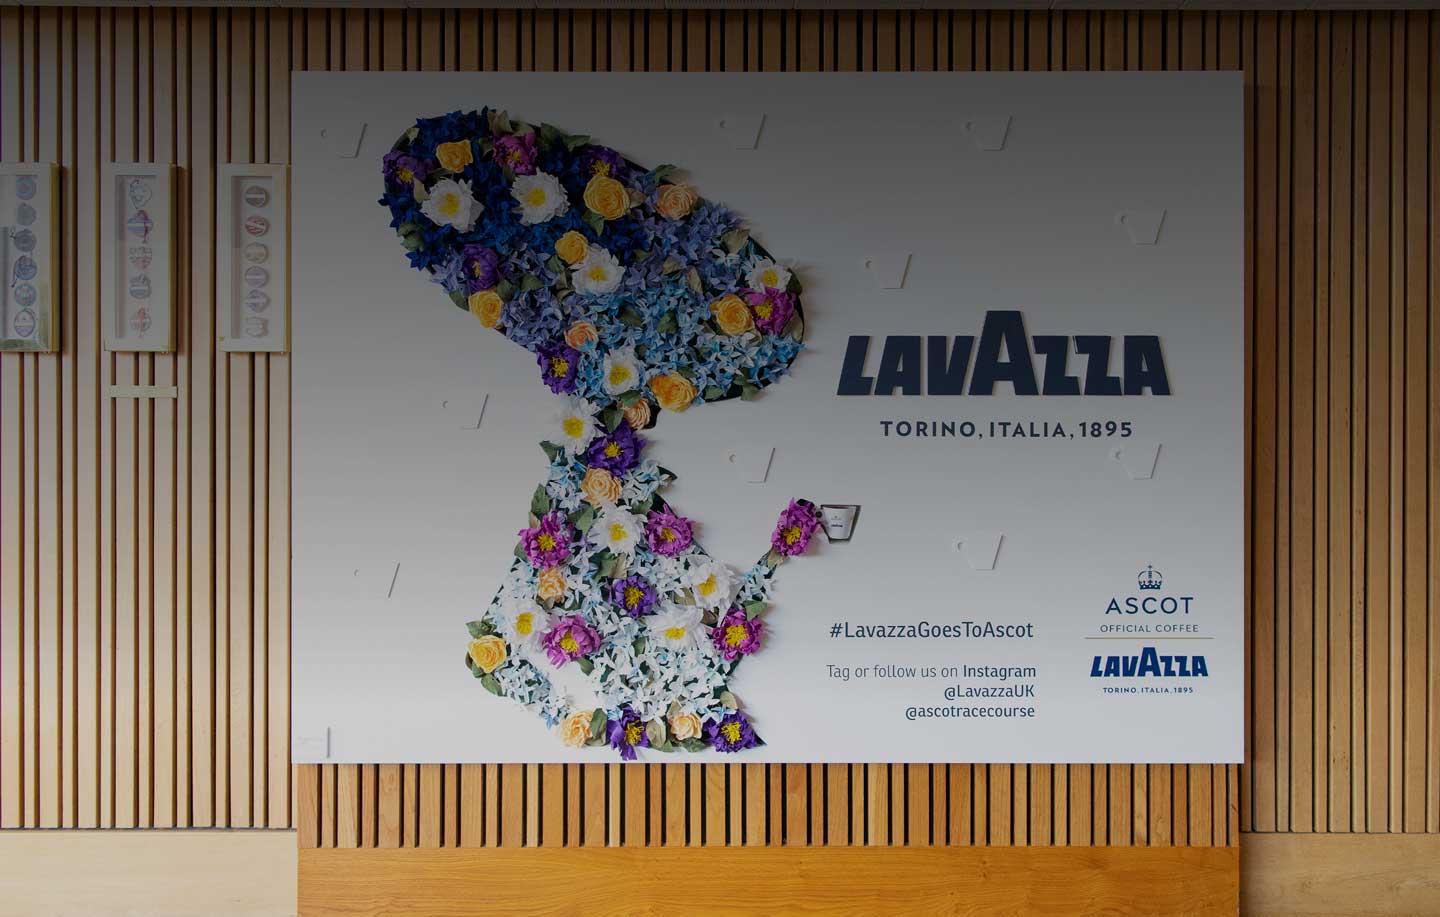 Royal Ascot and Lavazza: sharing the same values